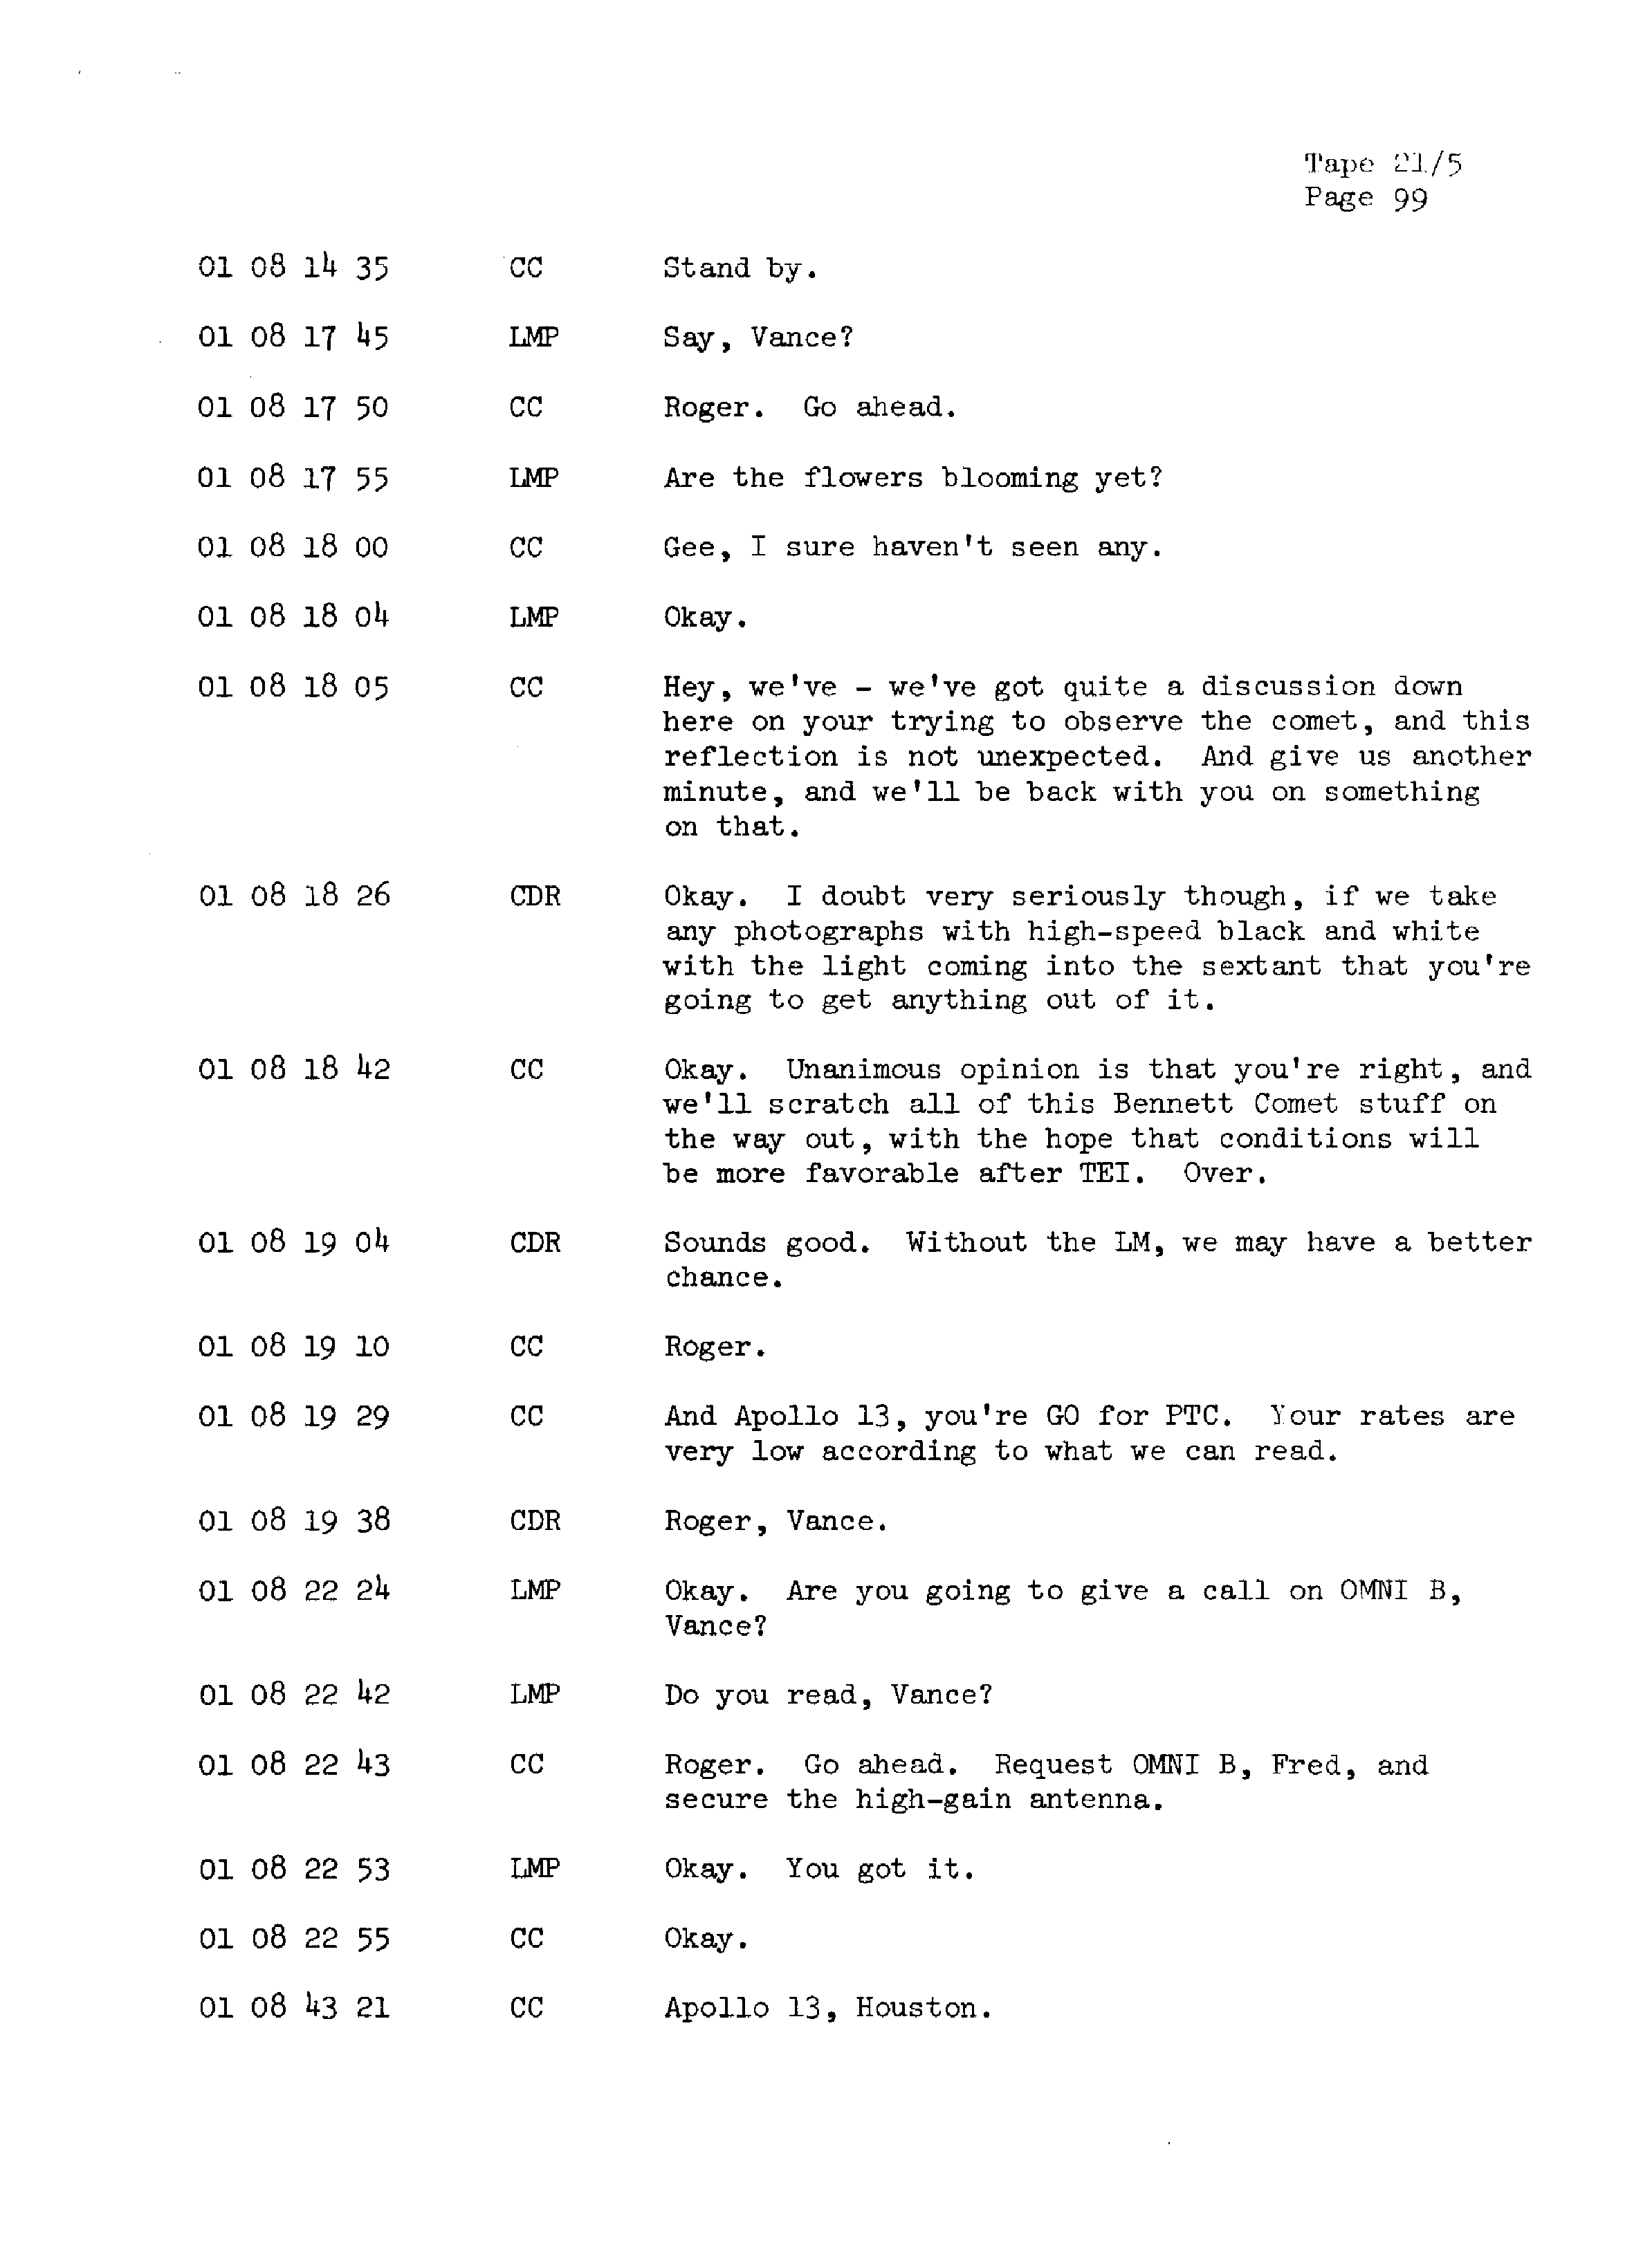 Page 106 of Apollo 13’s original transcript